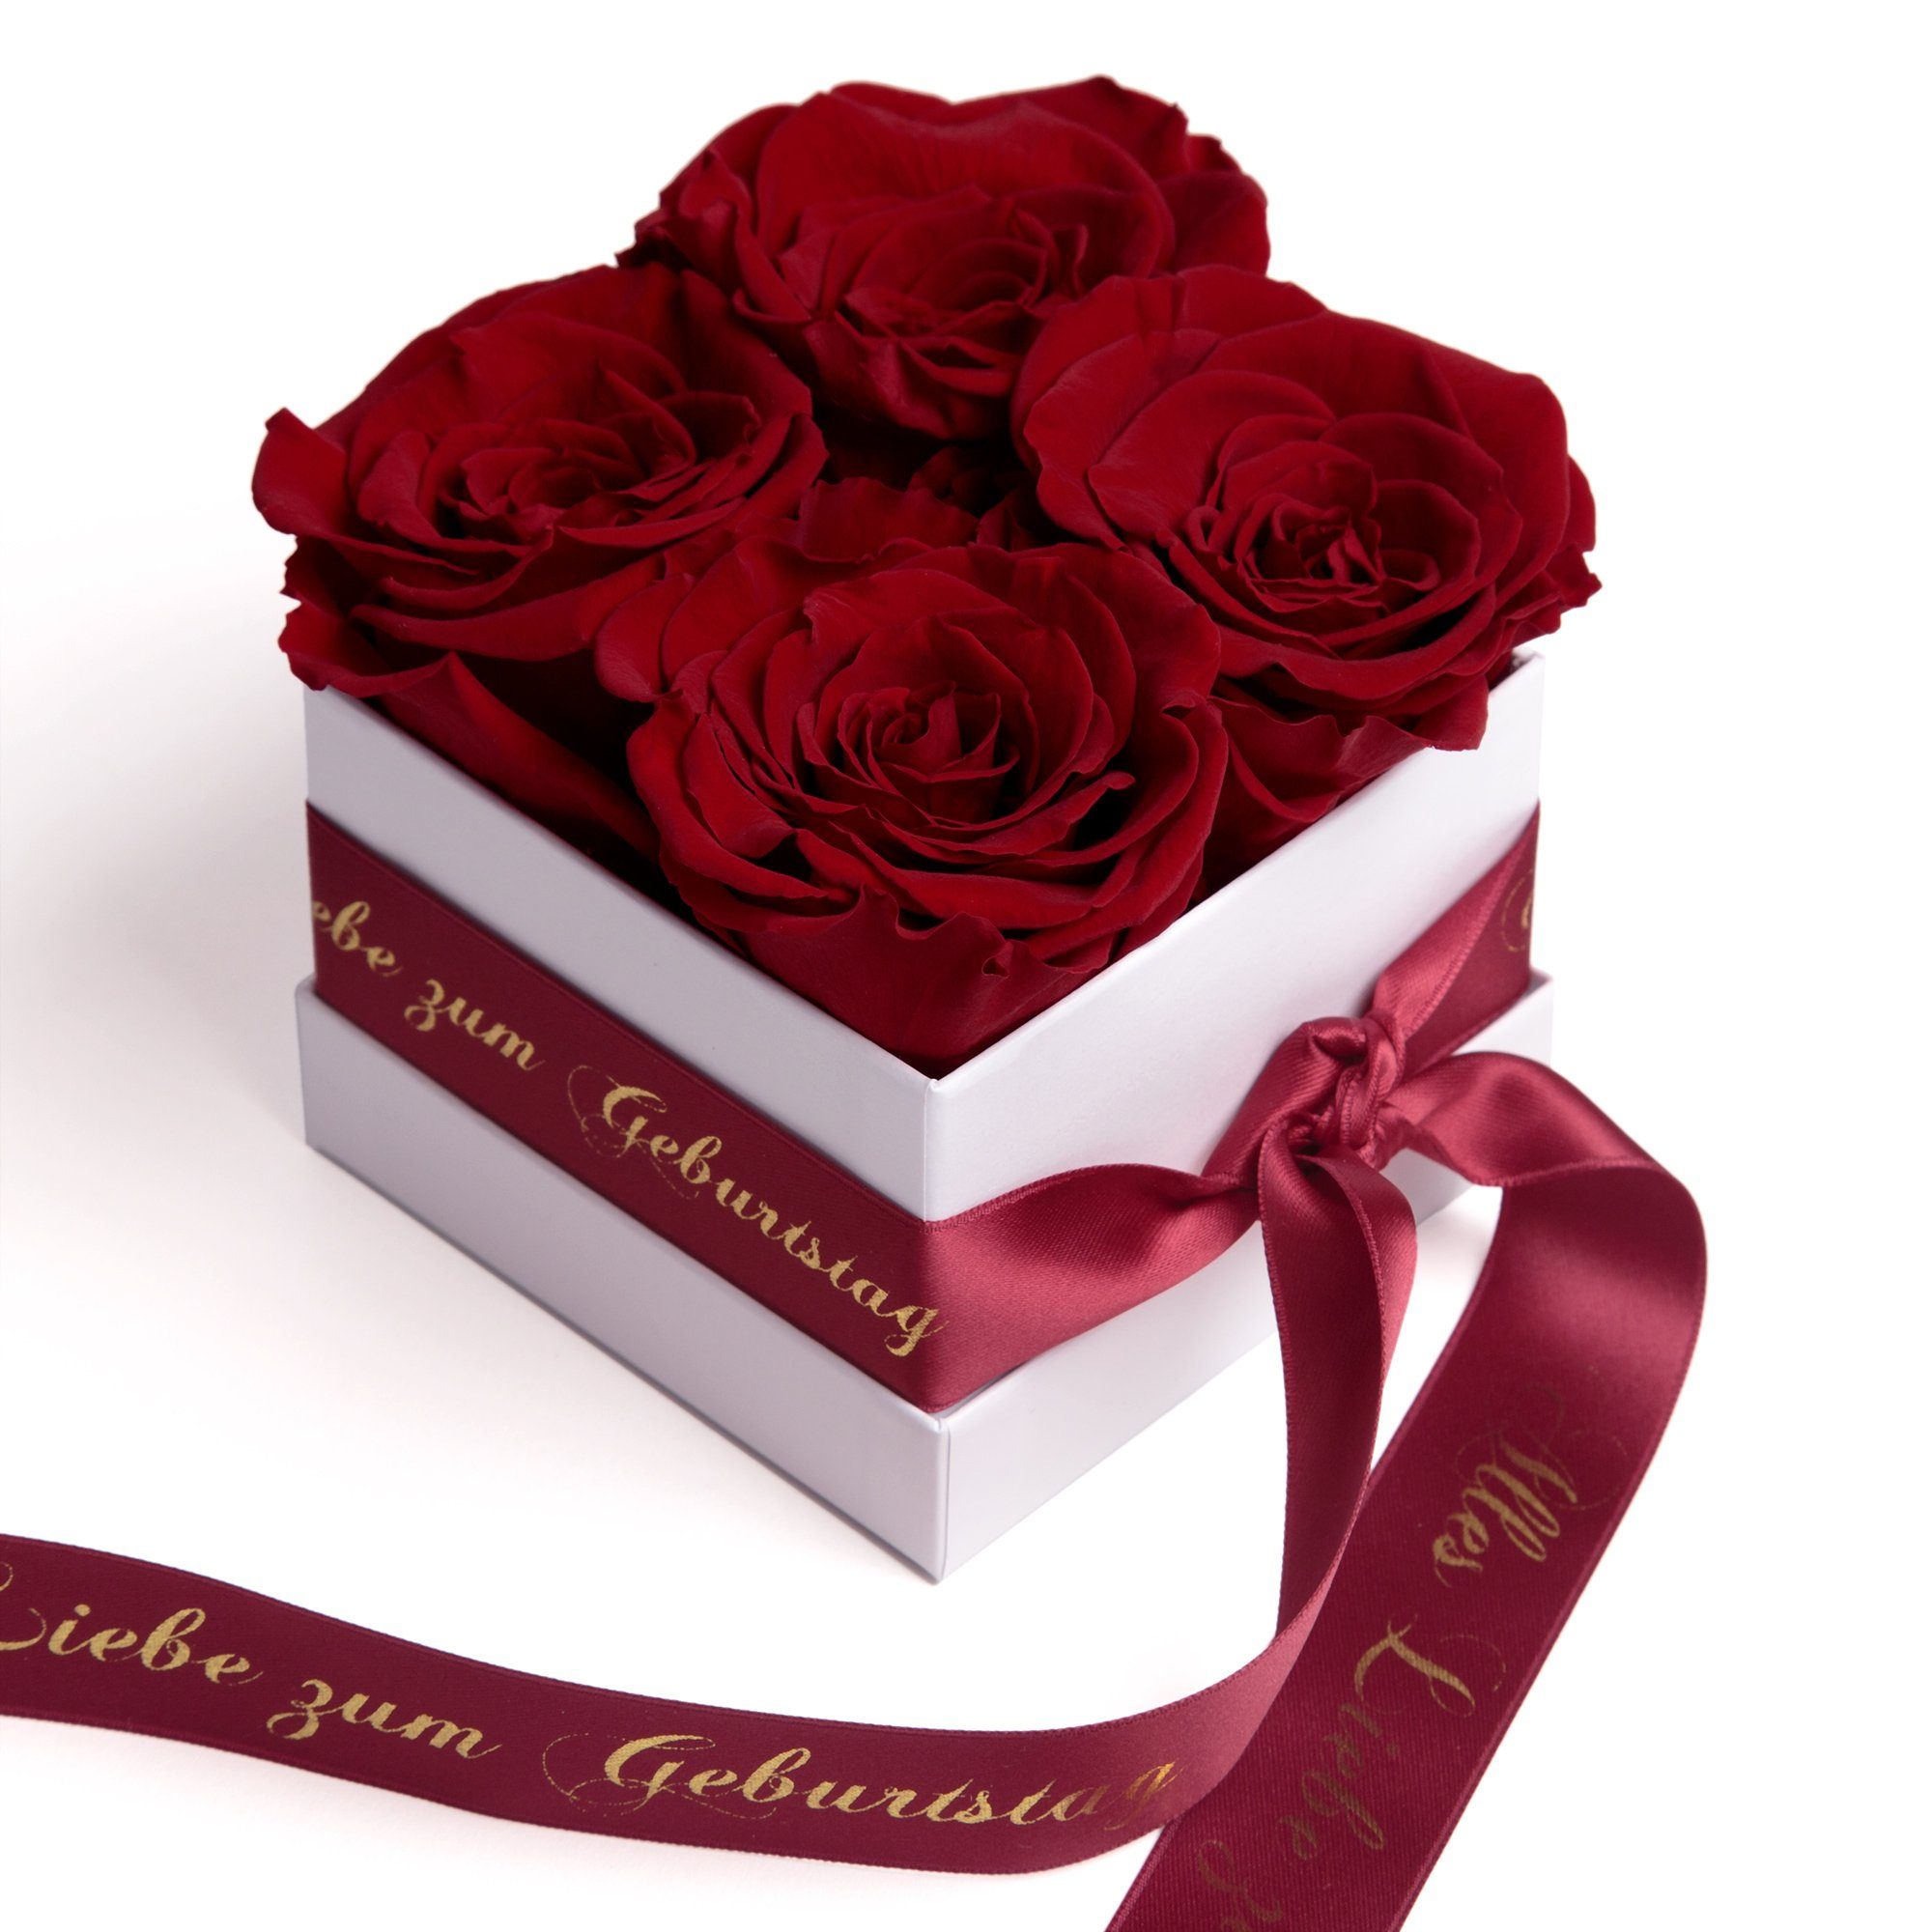 zu Rose bourgundy Blumen ROSEMARIE zum Alles haltbar Geschenk, Echte bis Liebe Heidelberg Rosenbox SCHULZ Infinity Dekoobjekt 3 Geburtstag Jahre